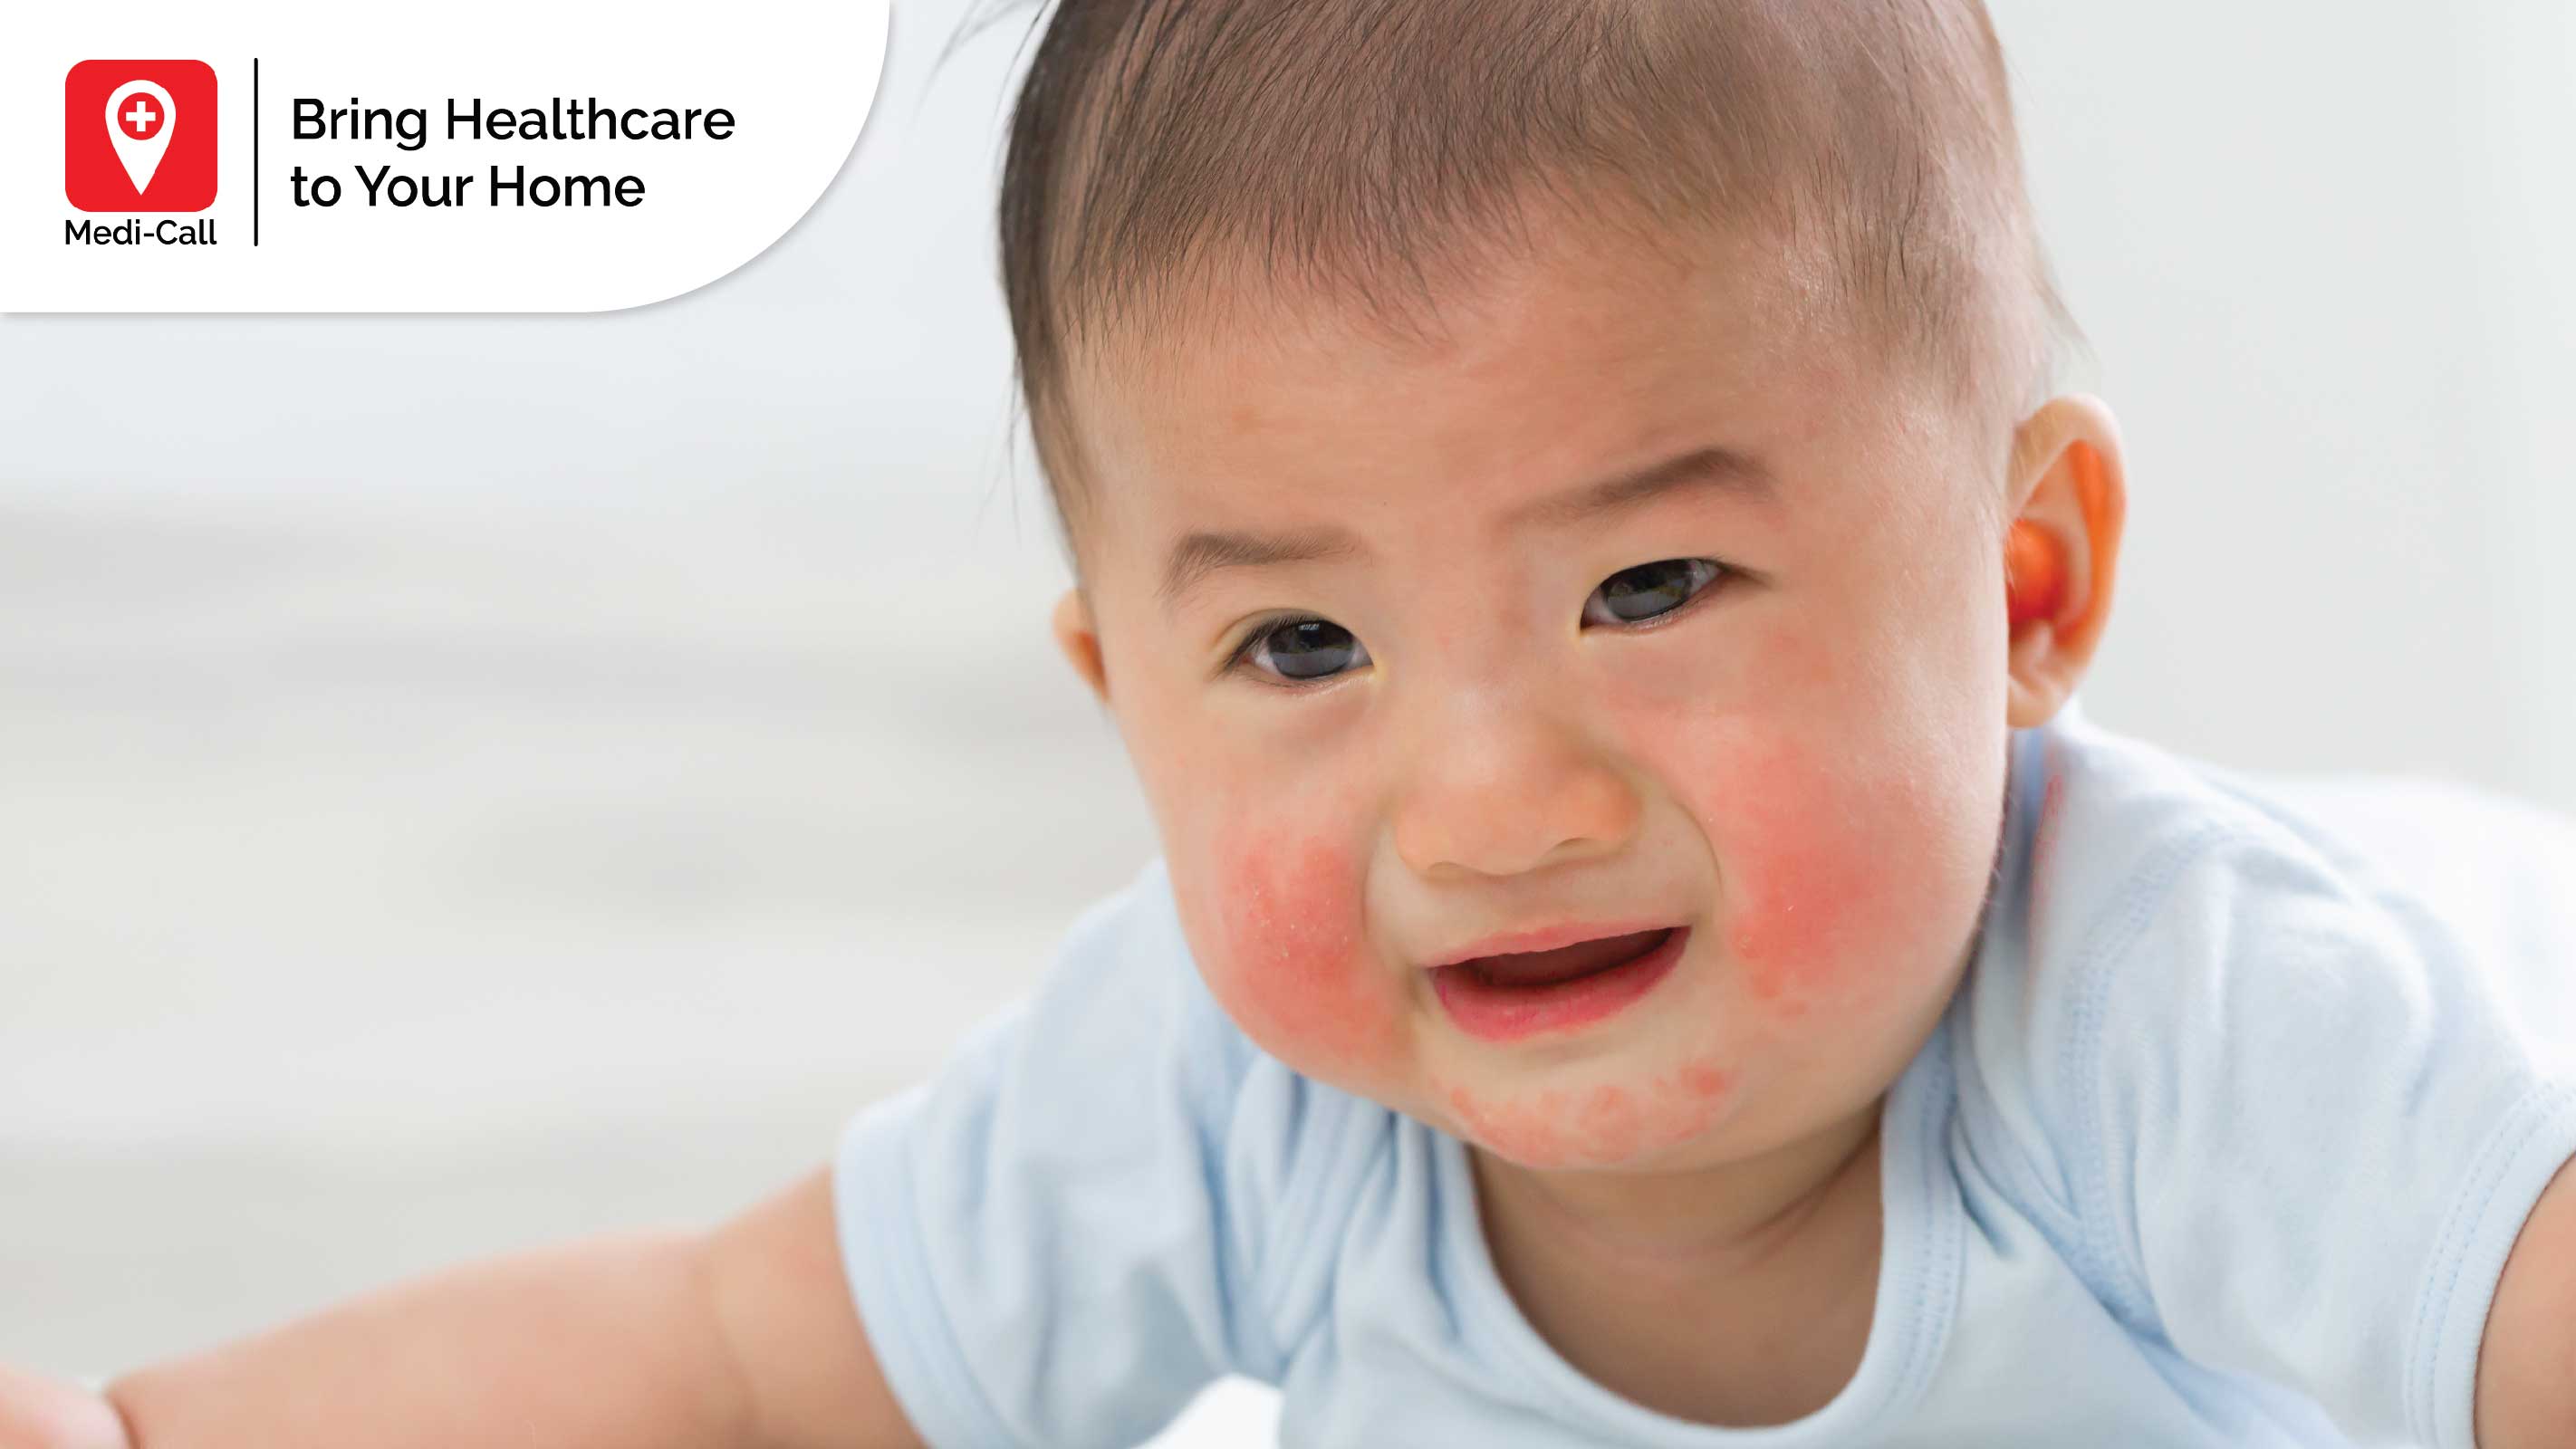 alergi kulit pada anak, macam alergi pada anak, jenis alergi pada anak, medi-call, medicall, alergi, bentol, gatal, penyebab alergi, penyebab gatal, penyebab bentol, medi-call, medicall